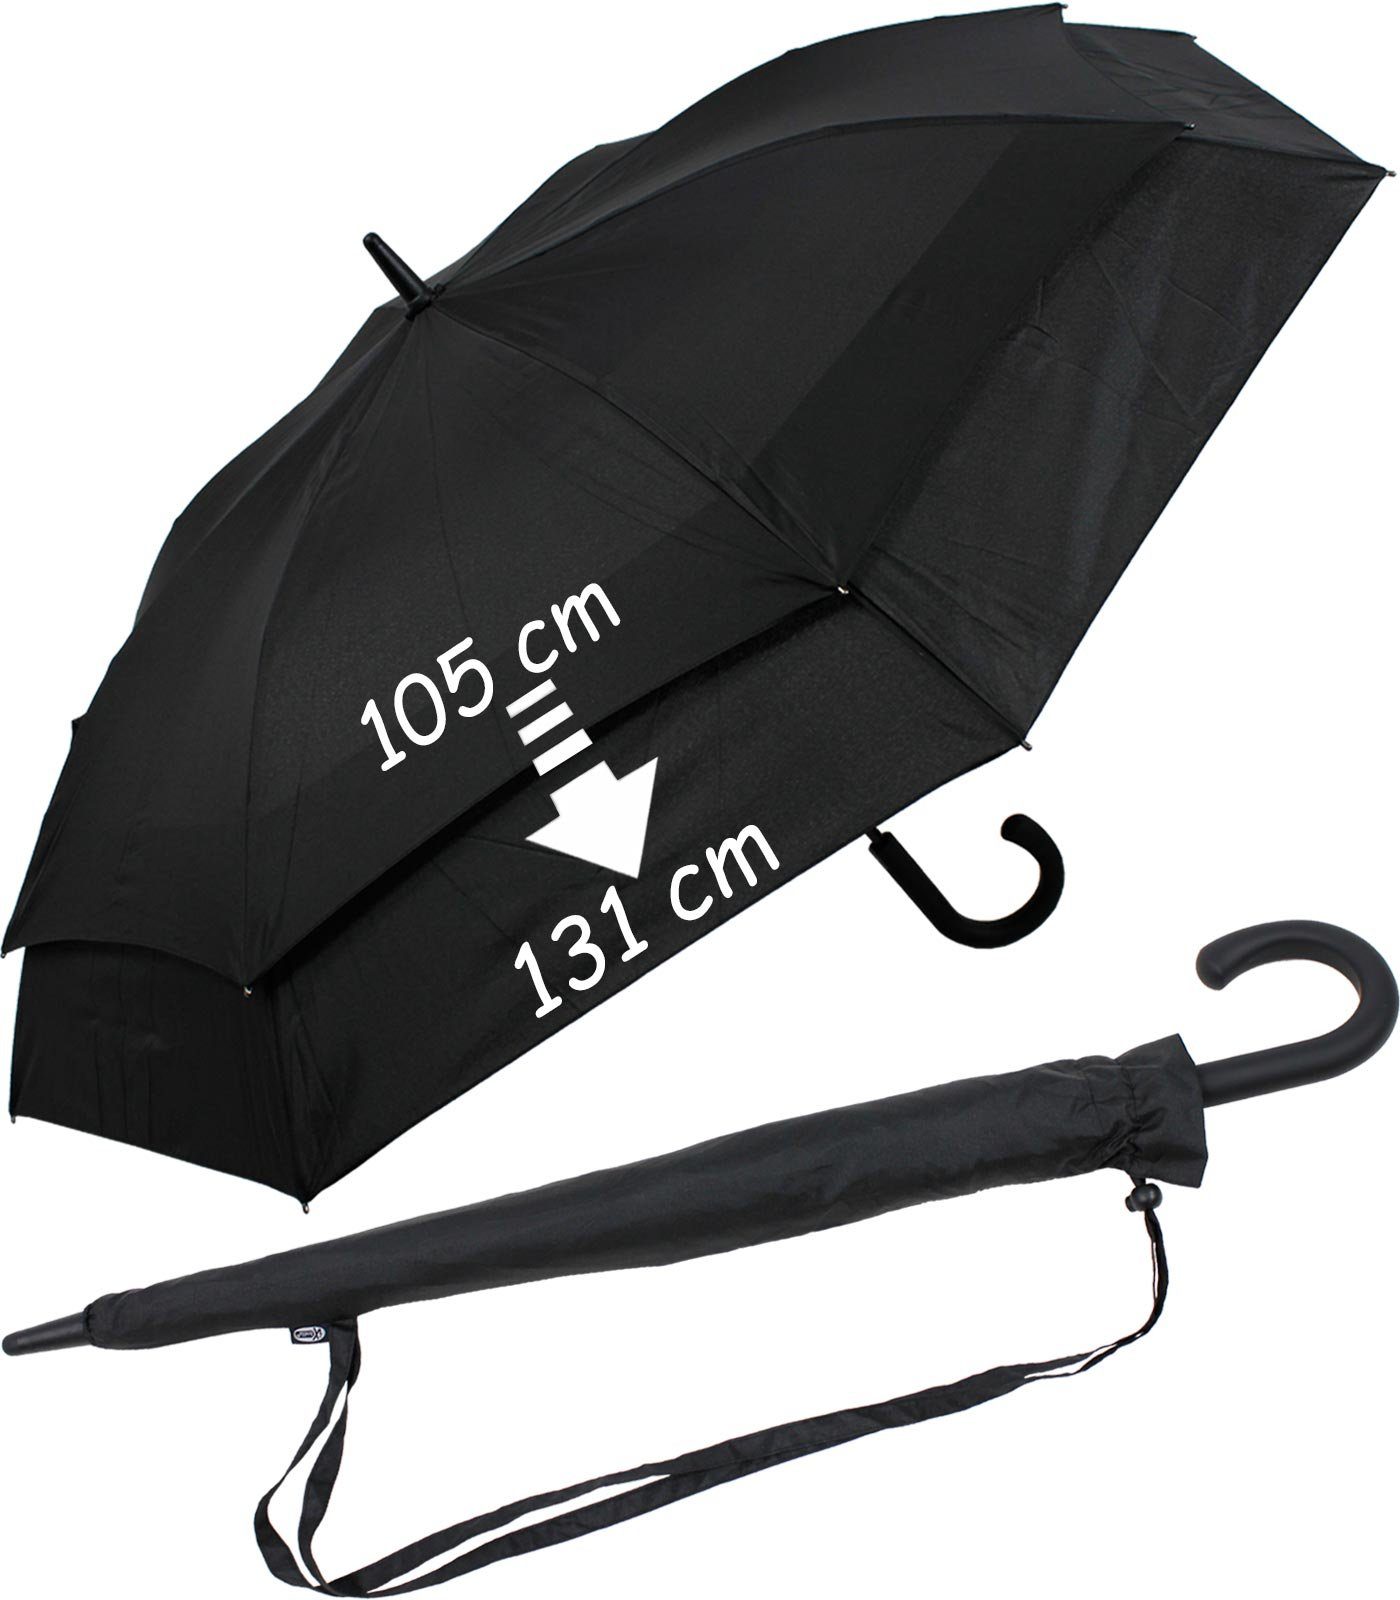 Move - Automatik, iX-brella XXL mit Schirm zweifarbig schwarz-schwarz to Langregenschirm expandierender